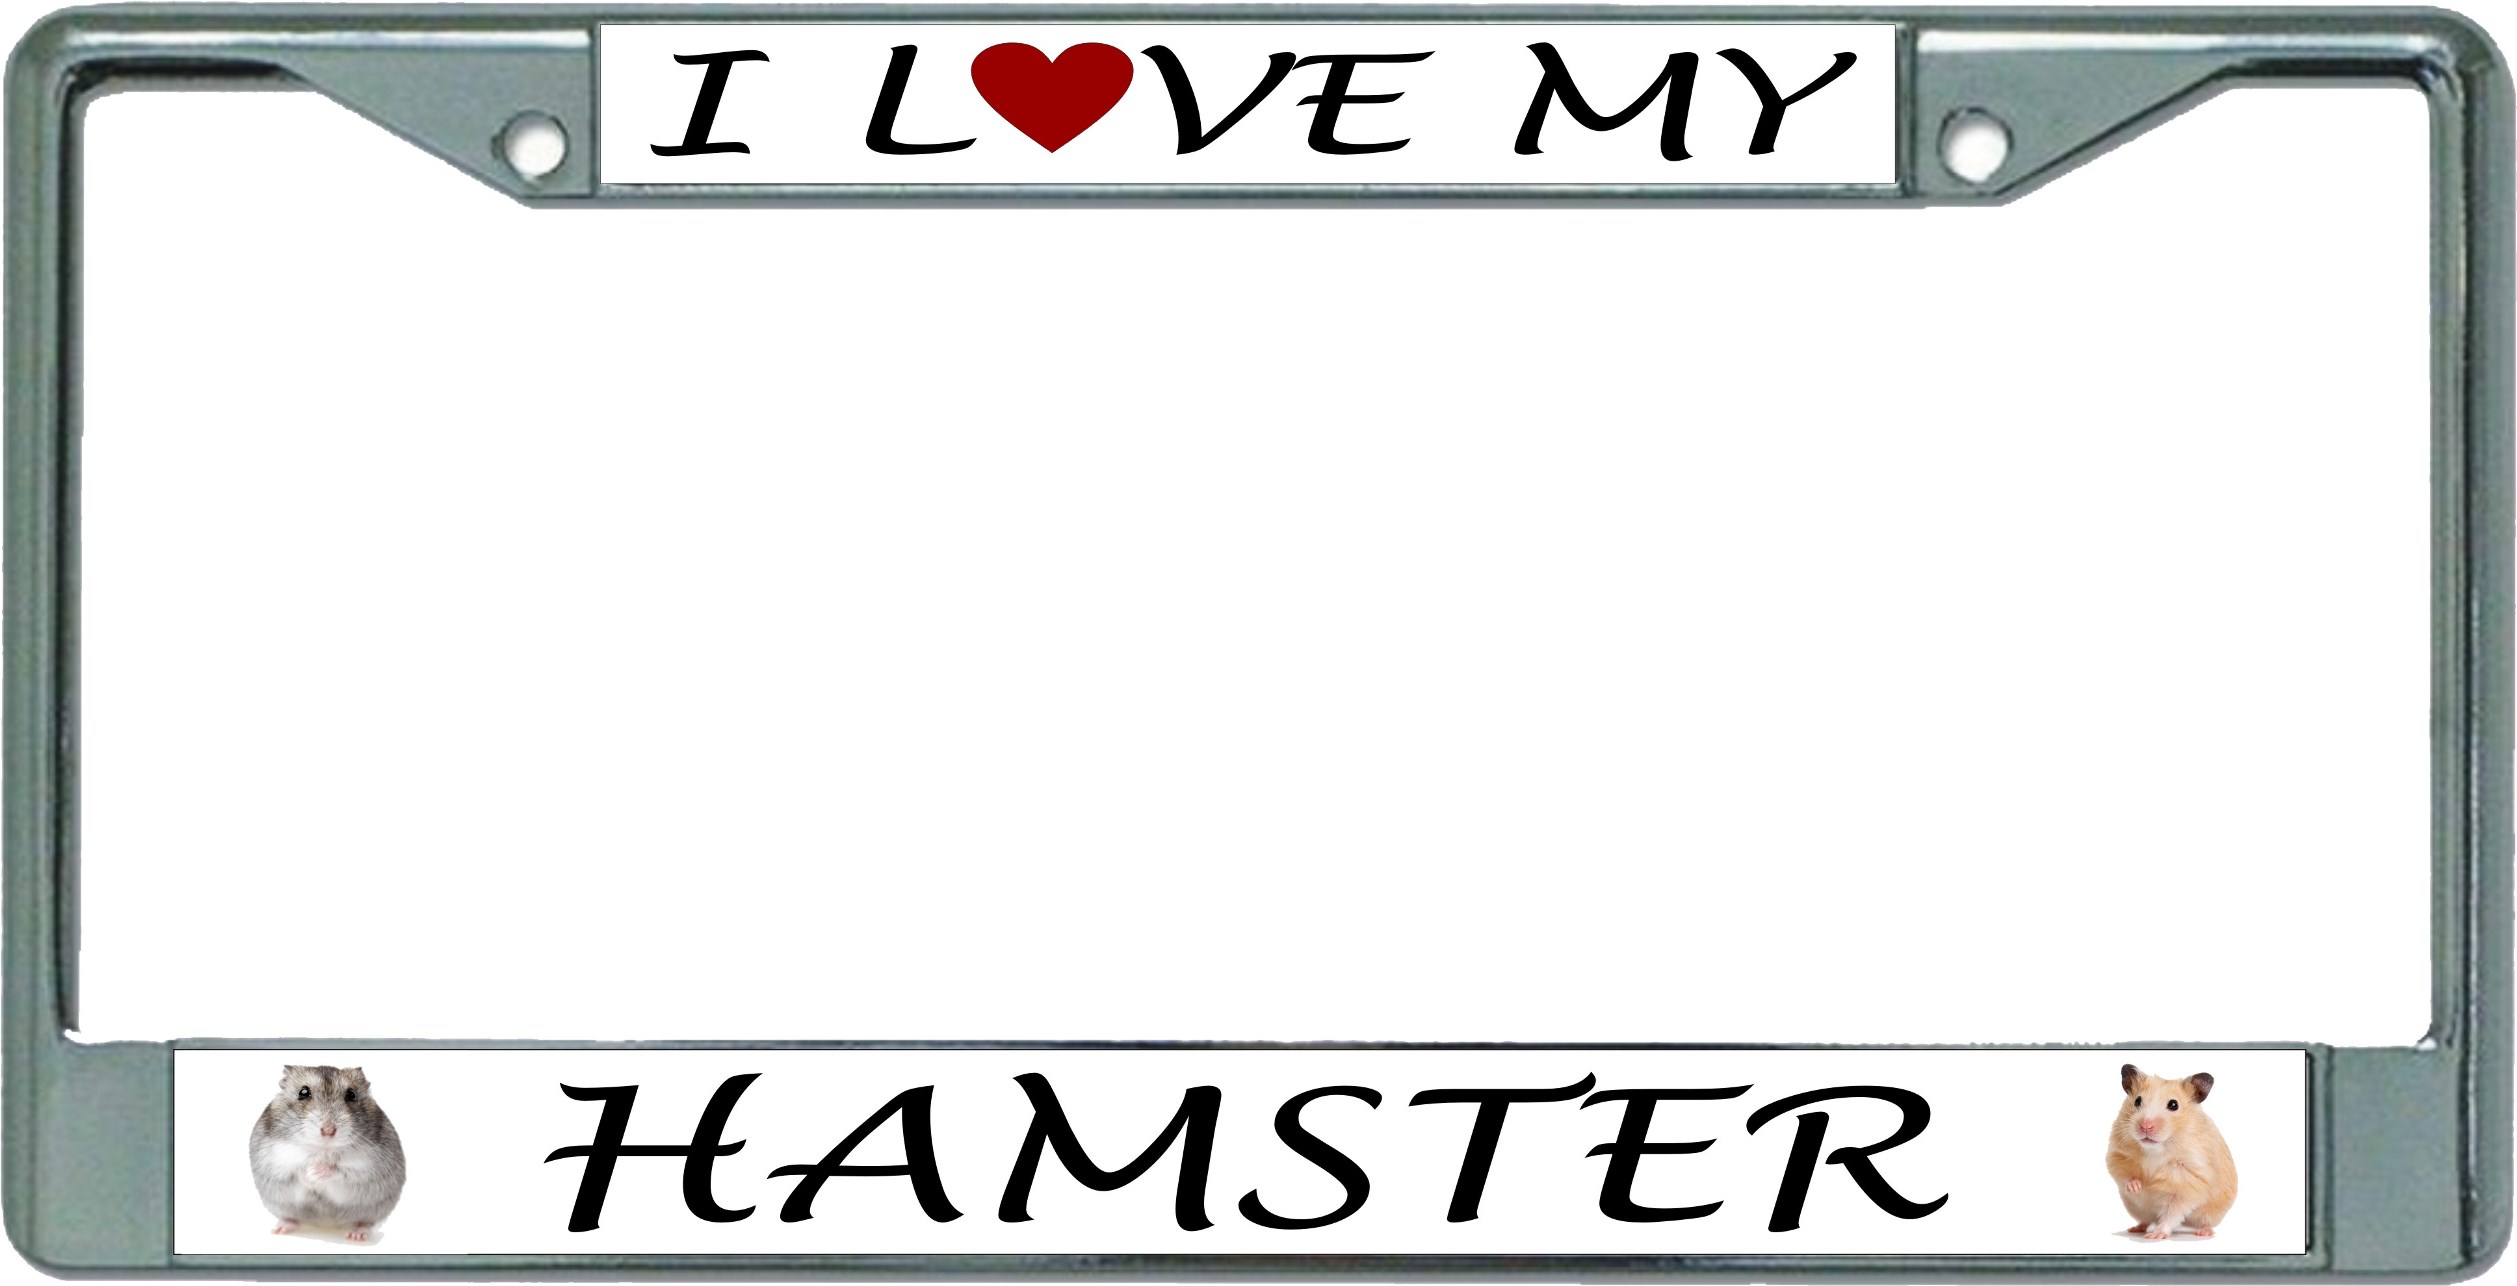 License Plates Online I Love My Hamster Chrome License Plate Frame